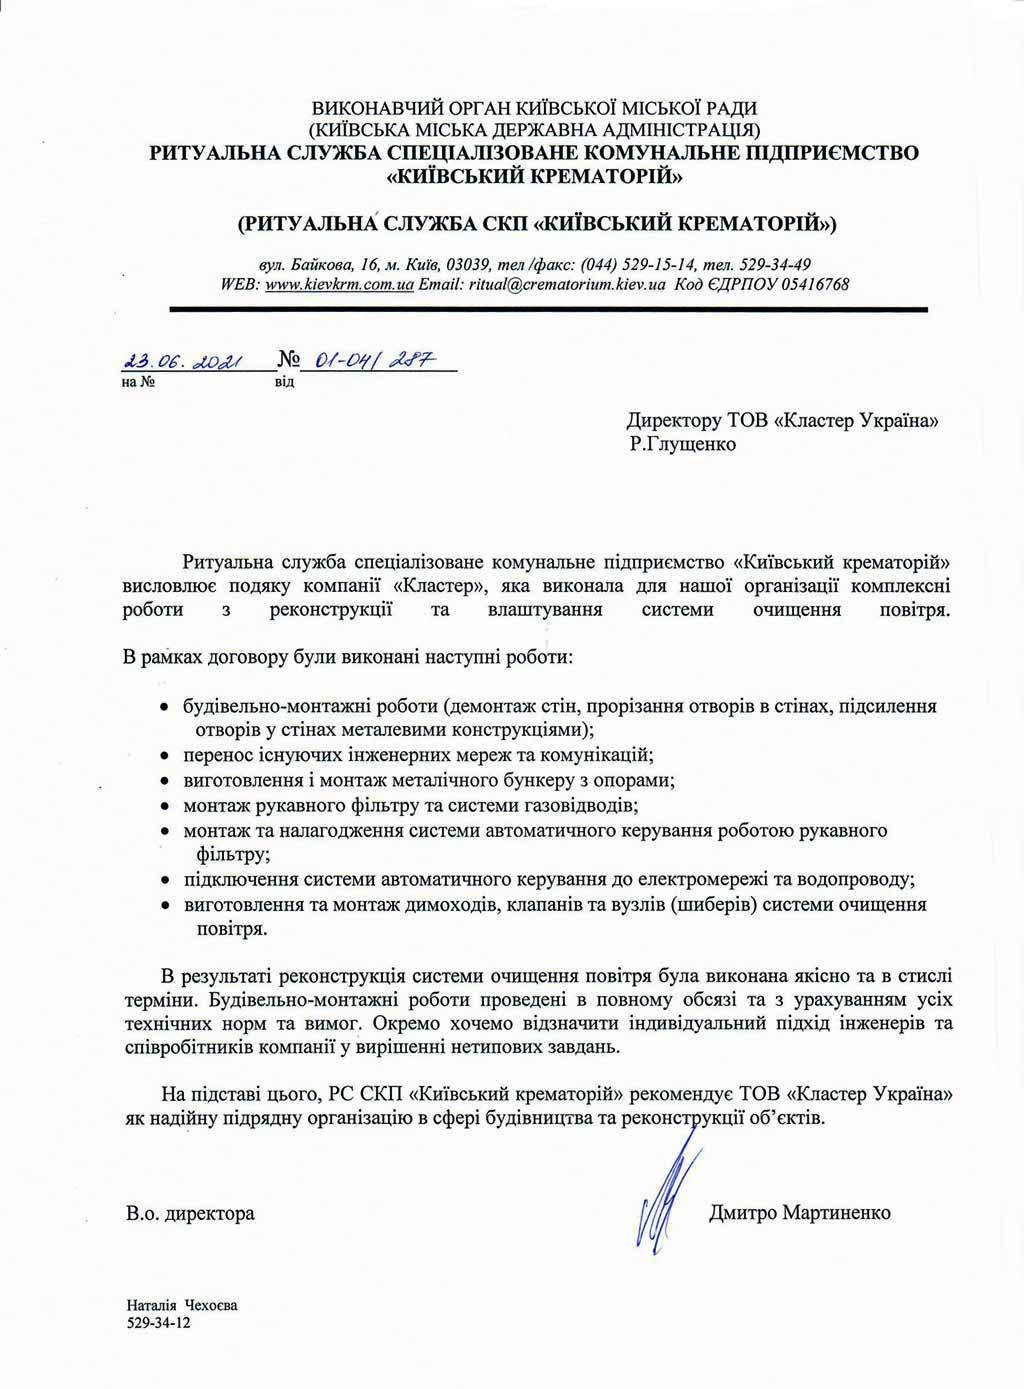 Рекомендательное письмо от Ритуальной службы специализированного коммунального предприятия «Киевский крематорий»